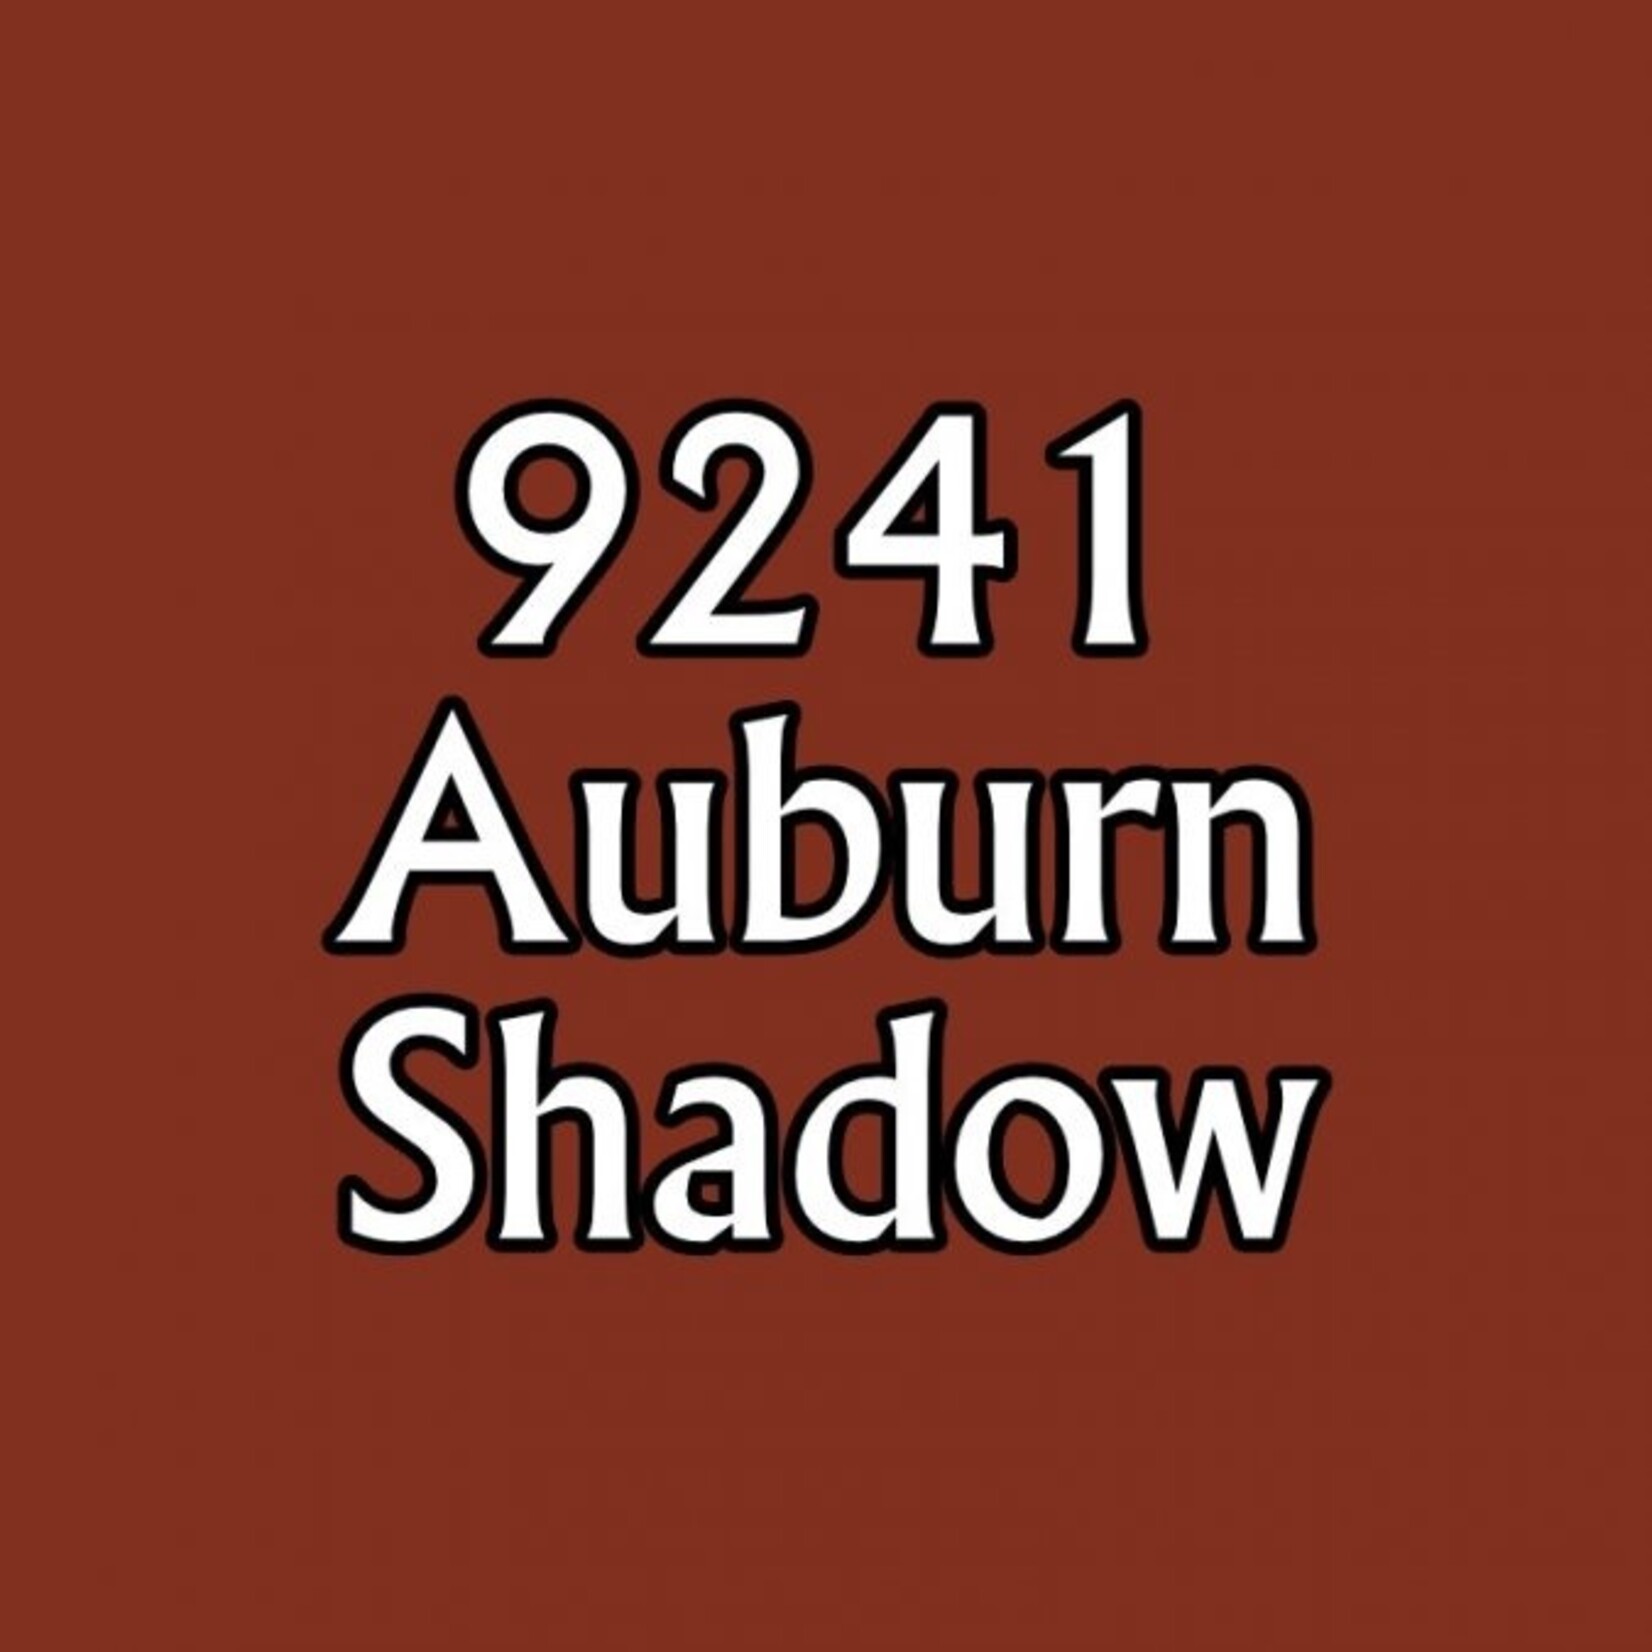 MSP Auburn  shadow